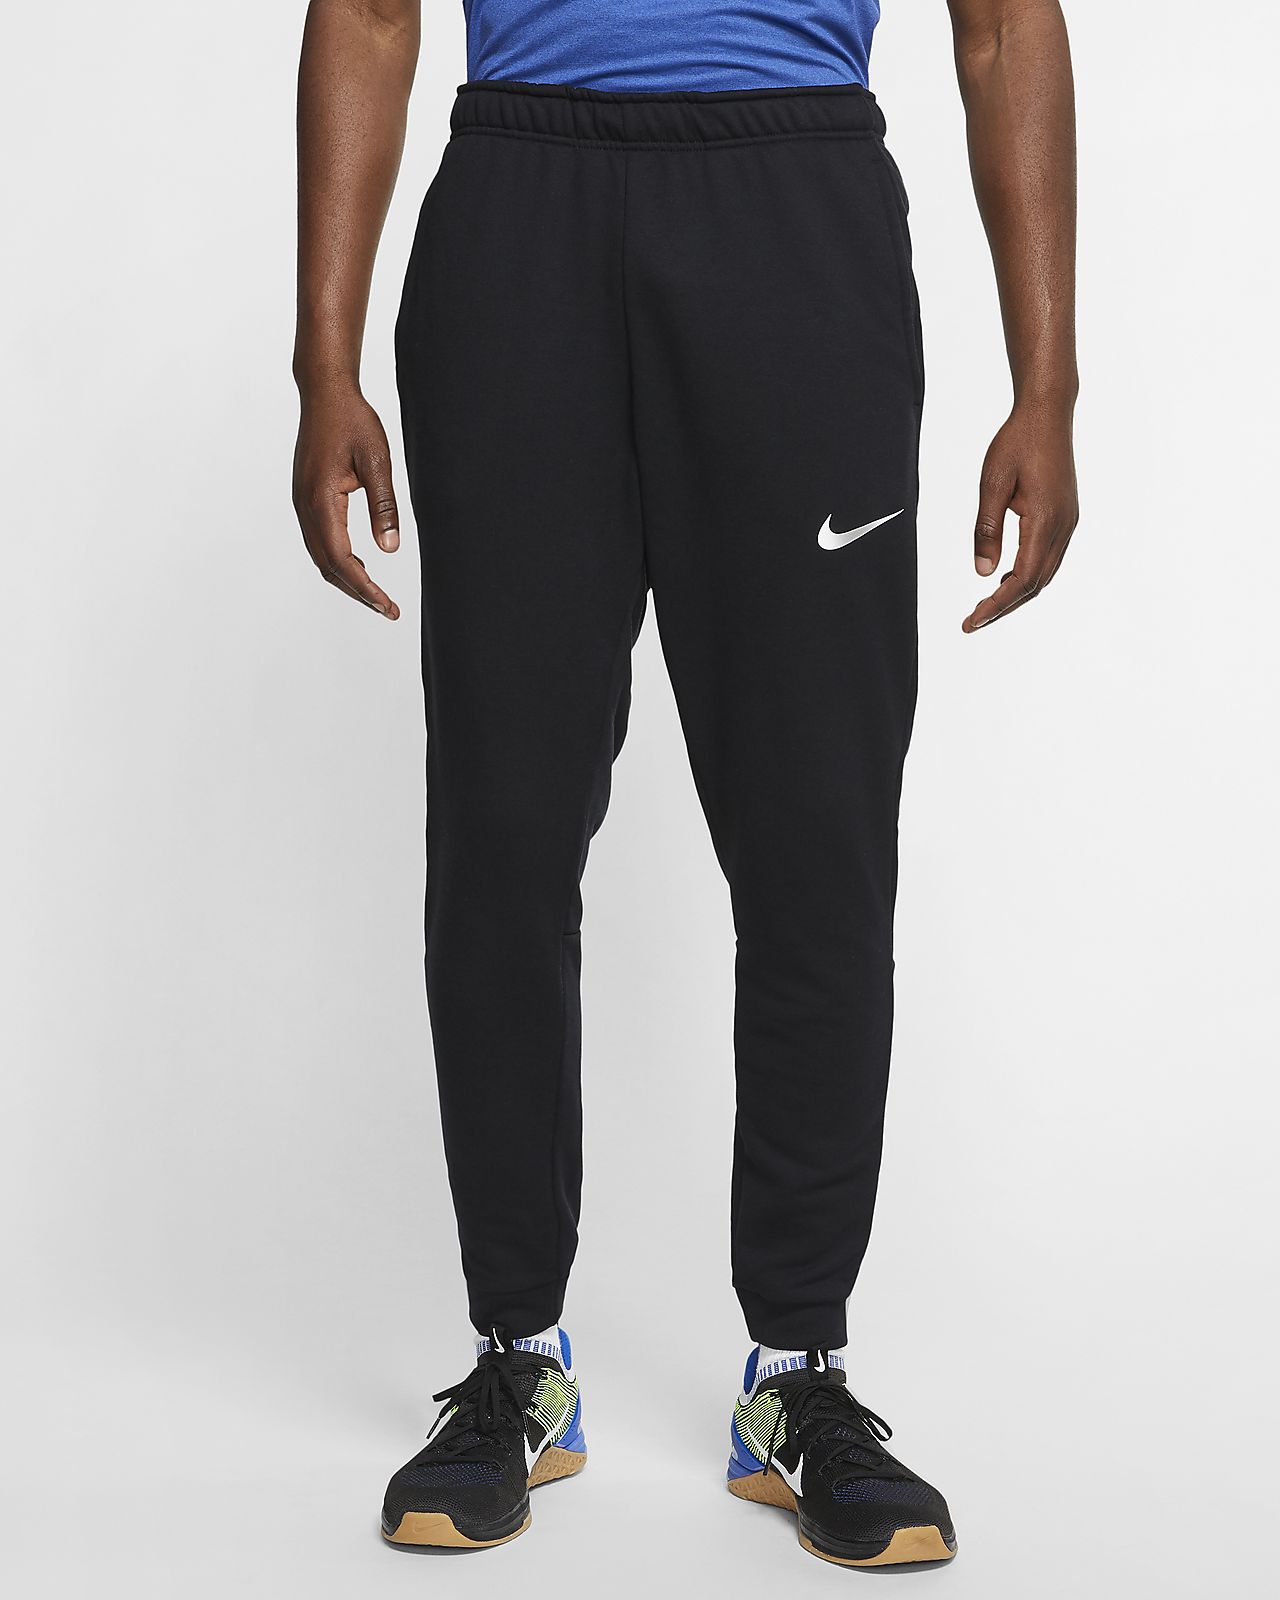 Nike Dri-FIT Men's Fleece Training Pants. Nike.com